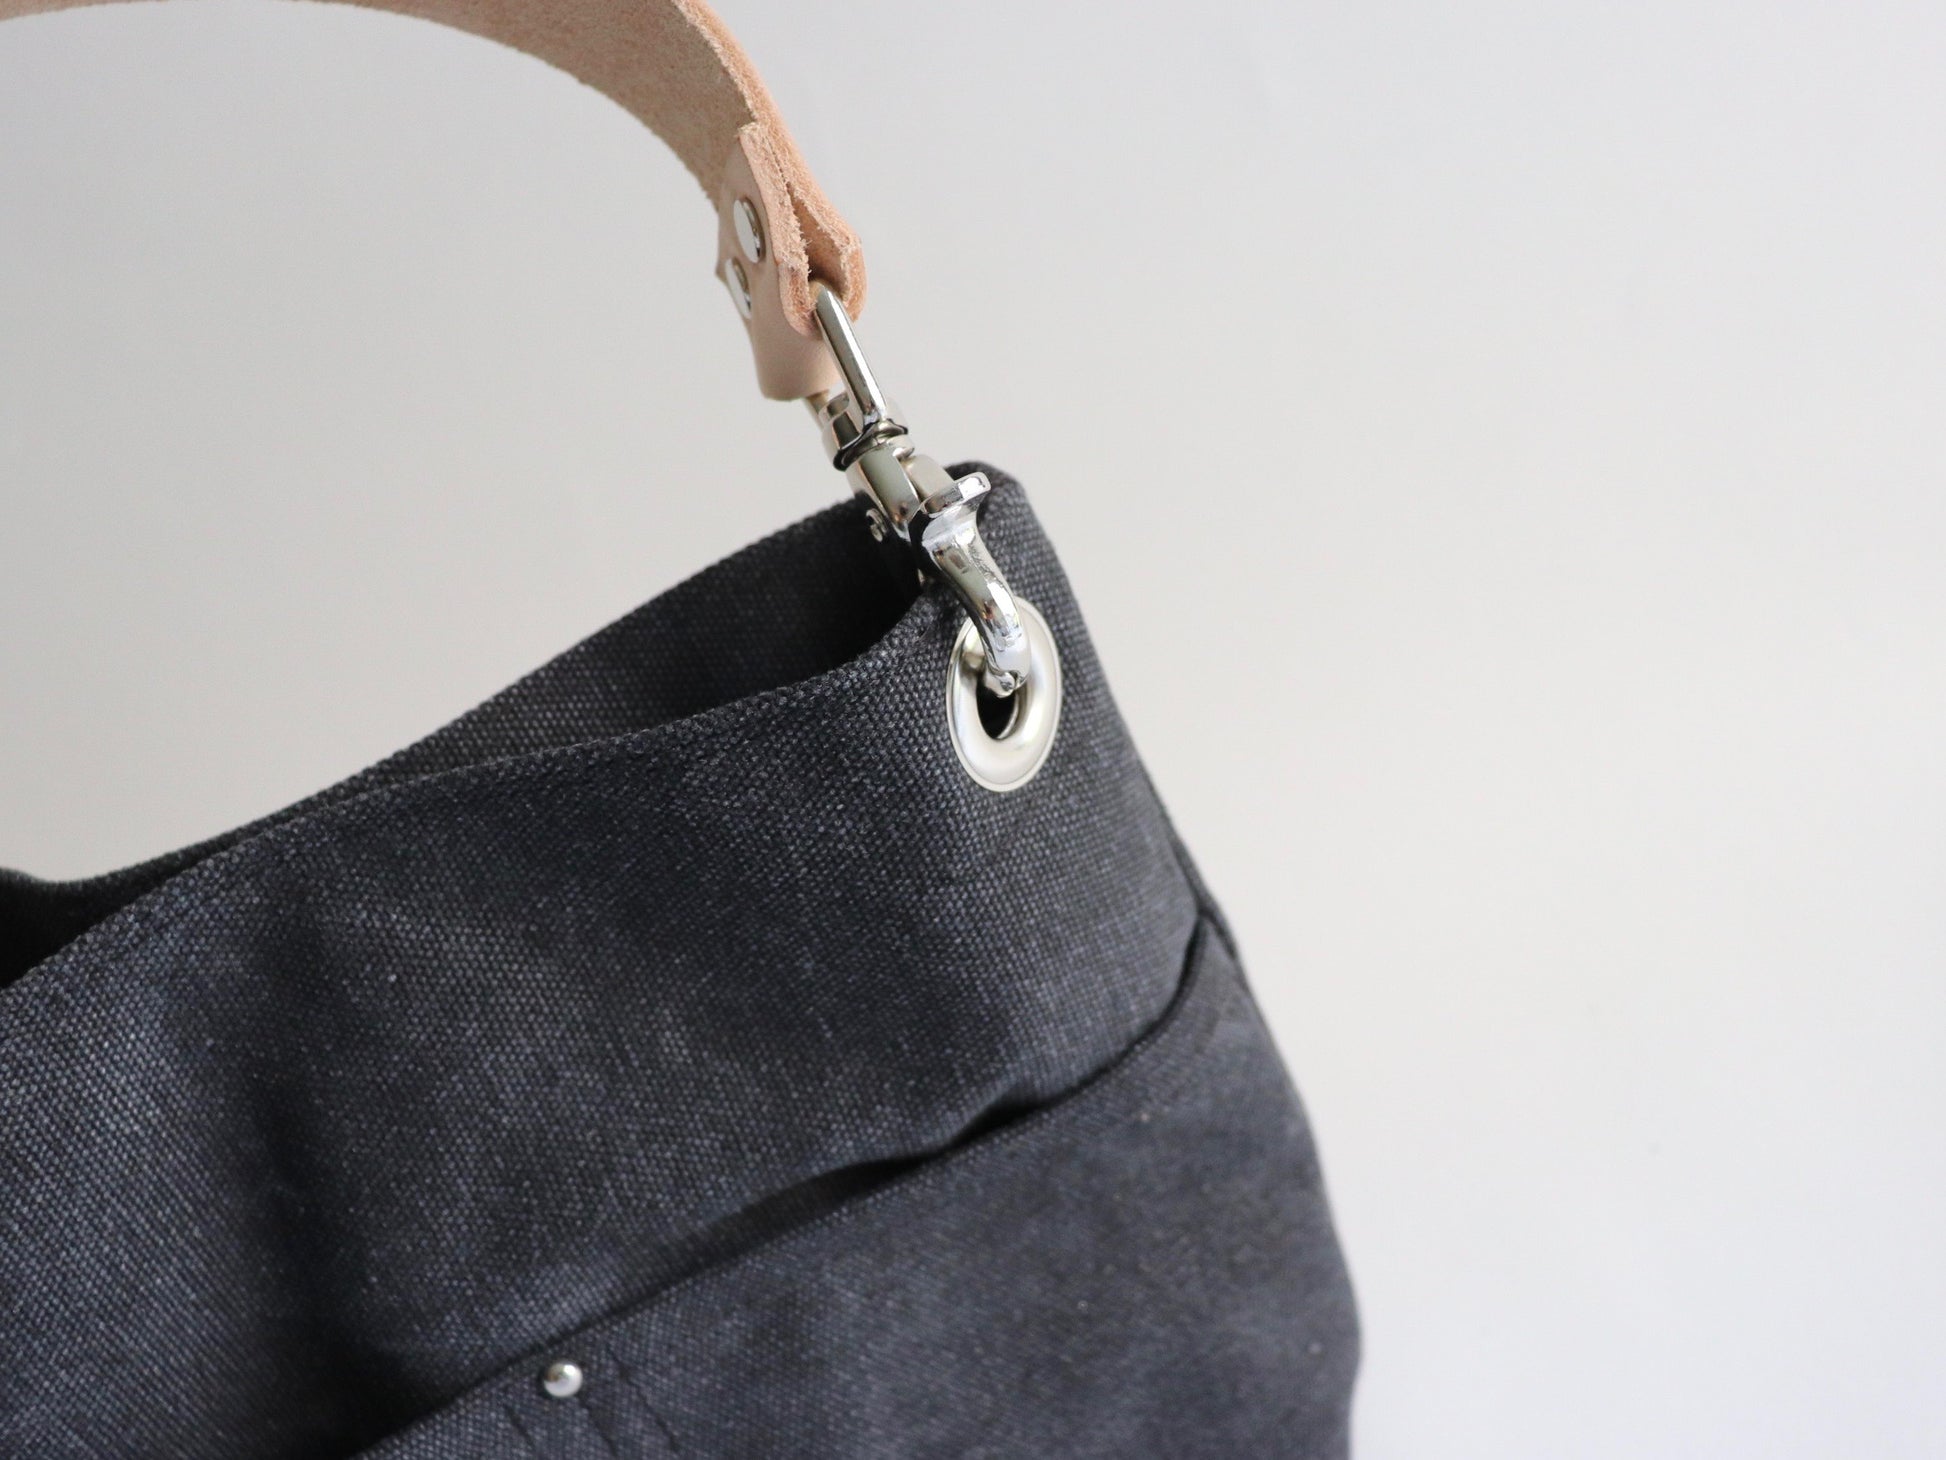  Cross Body Straps for Handbags Women Bag Straps for